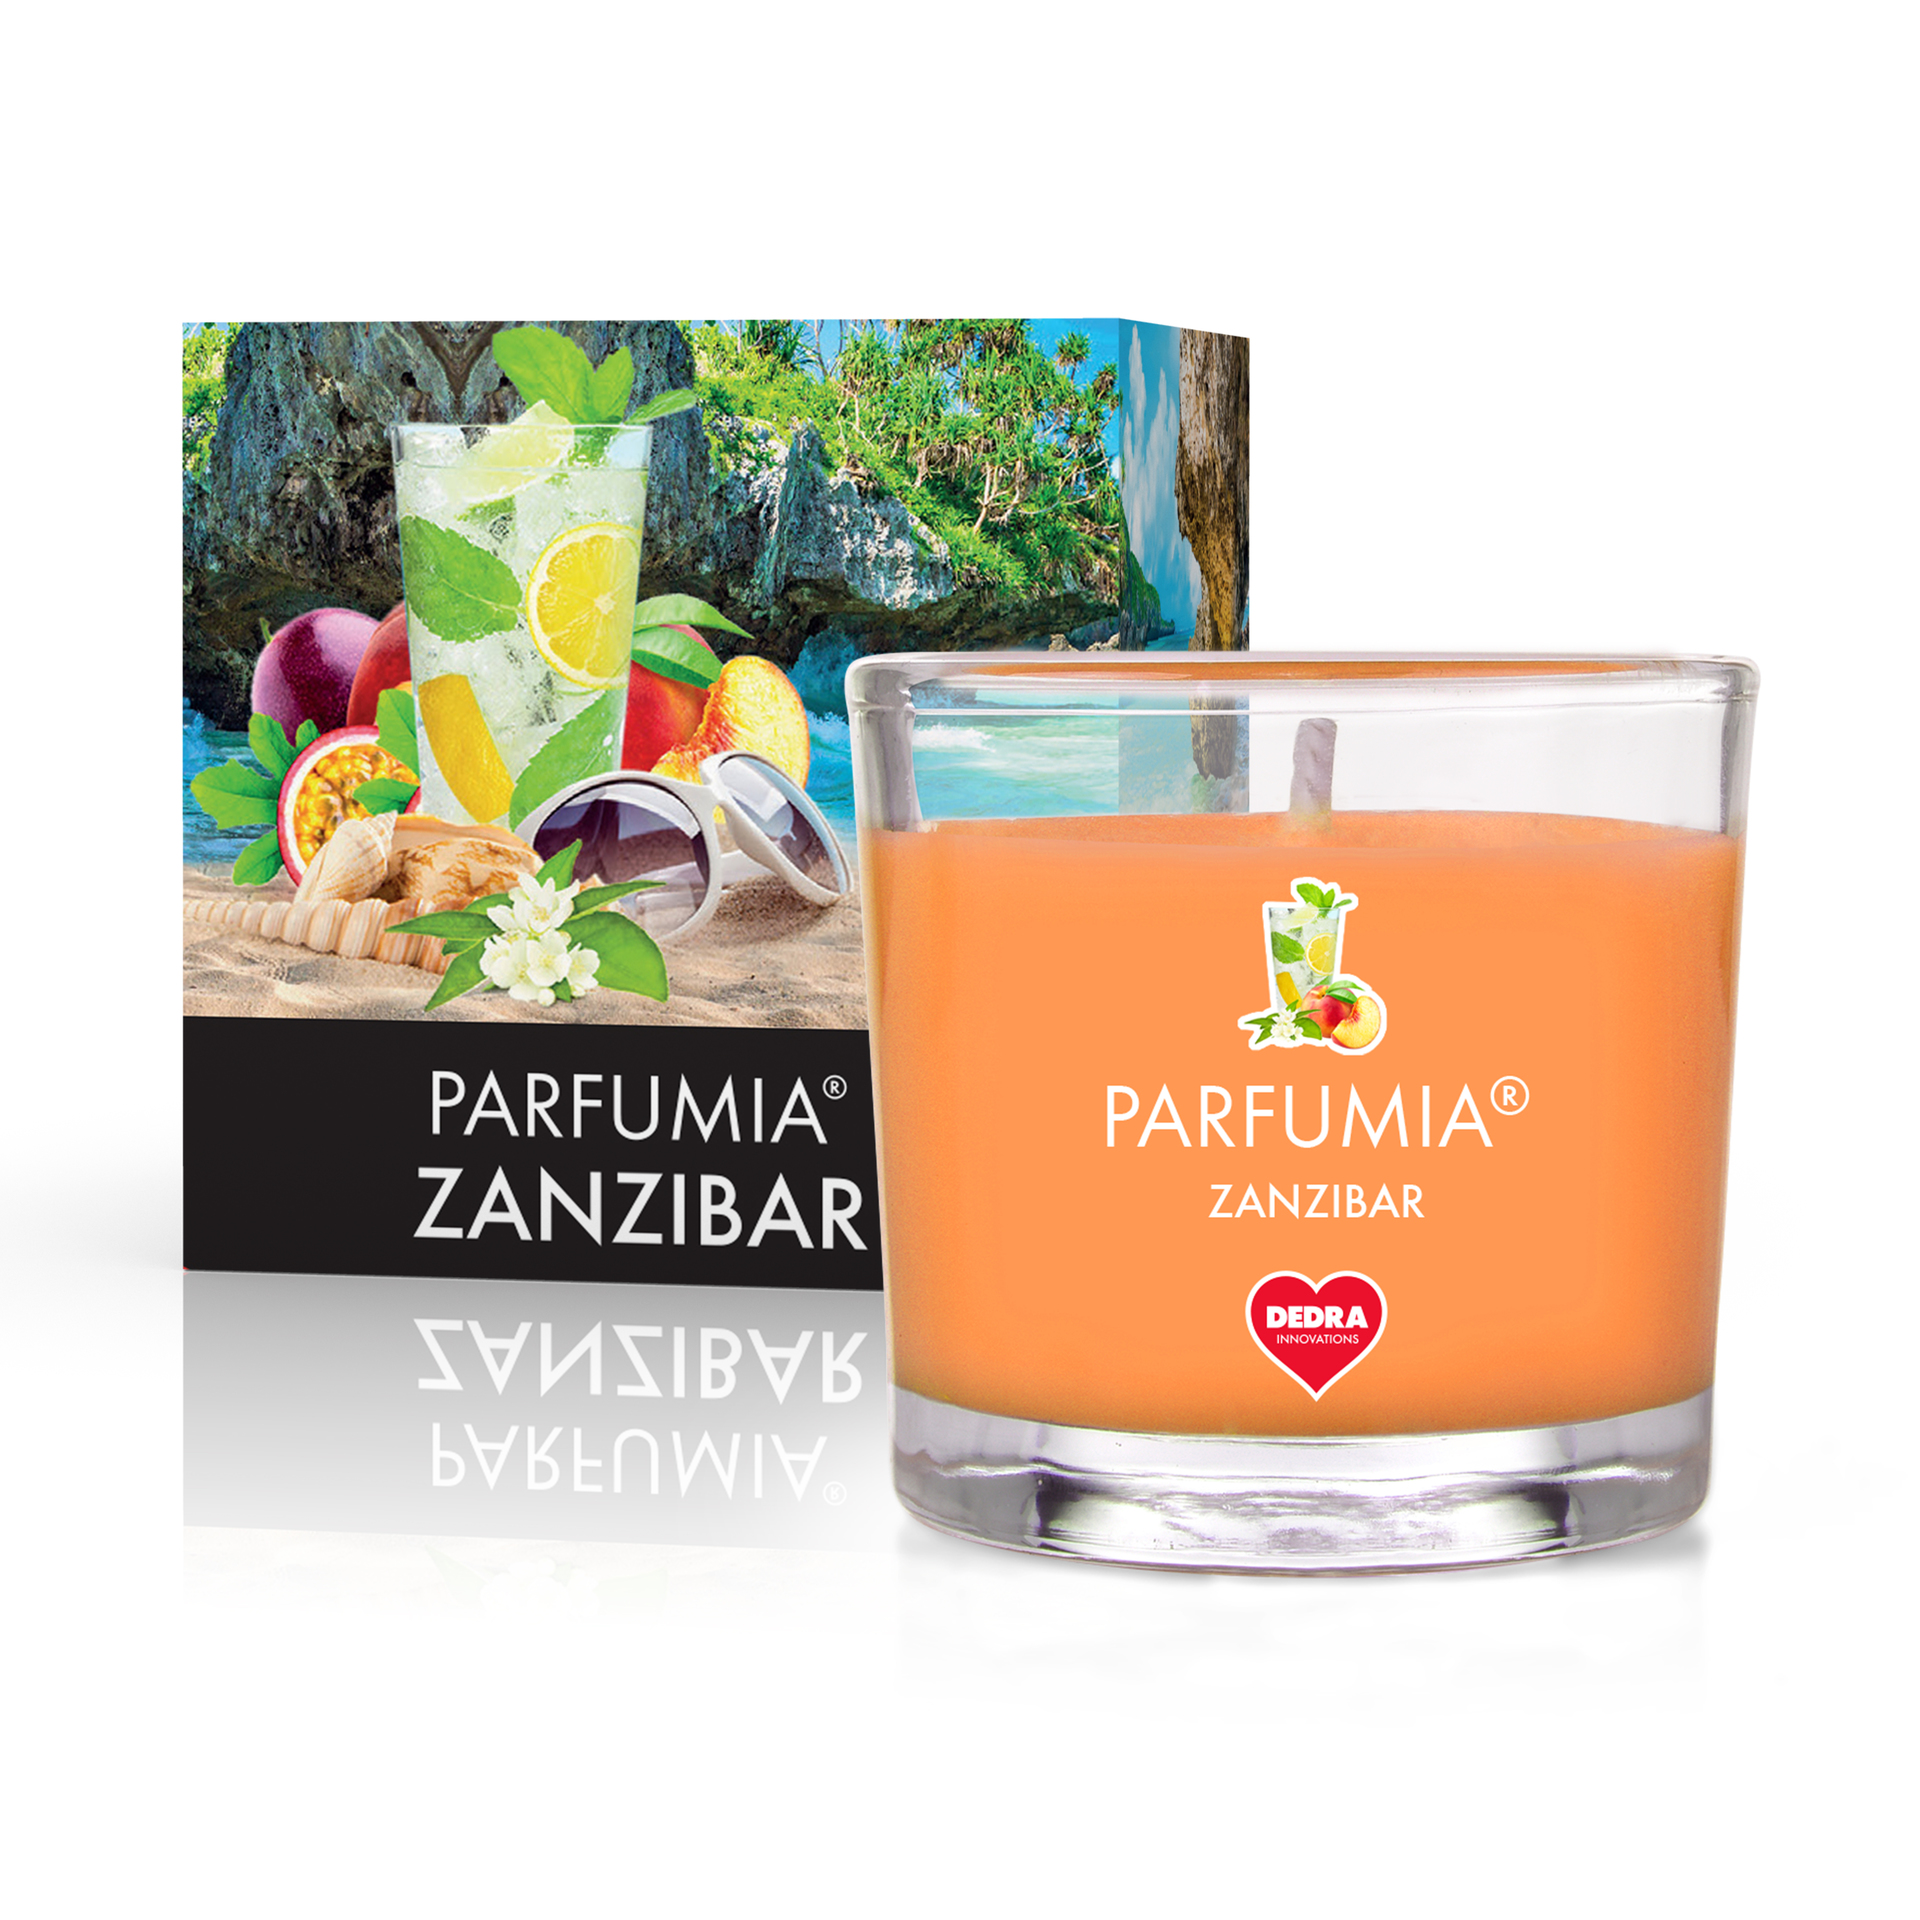 55 ml votivní sójová eko-svíce, Zanzibar, Parfumia